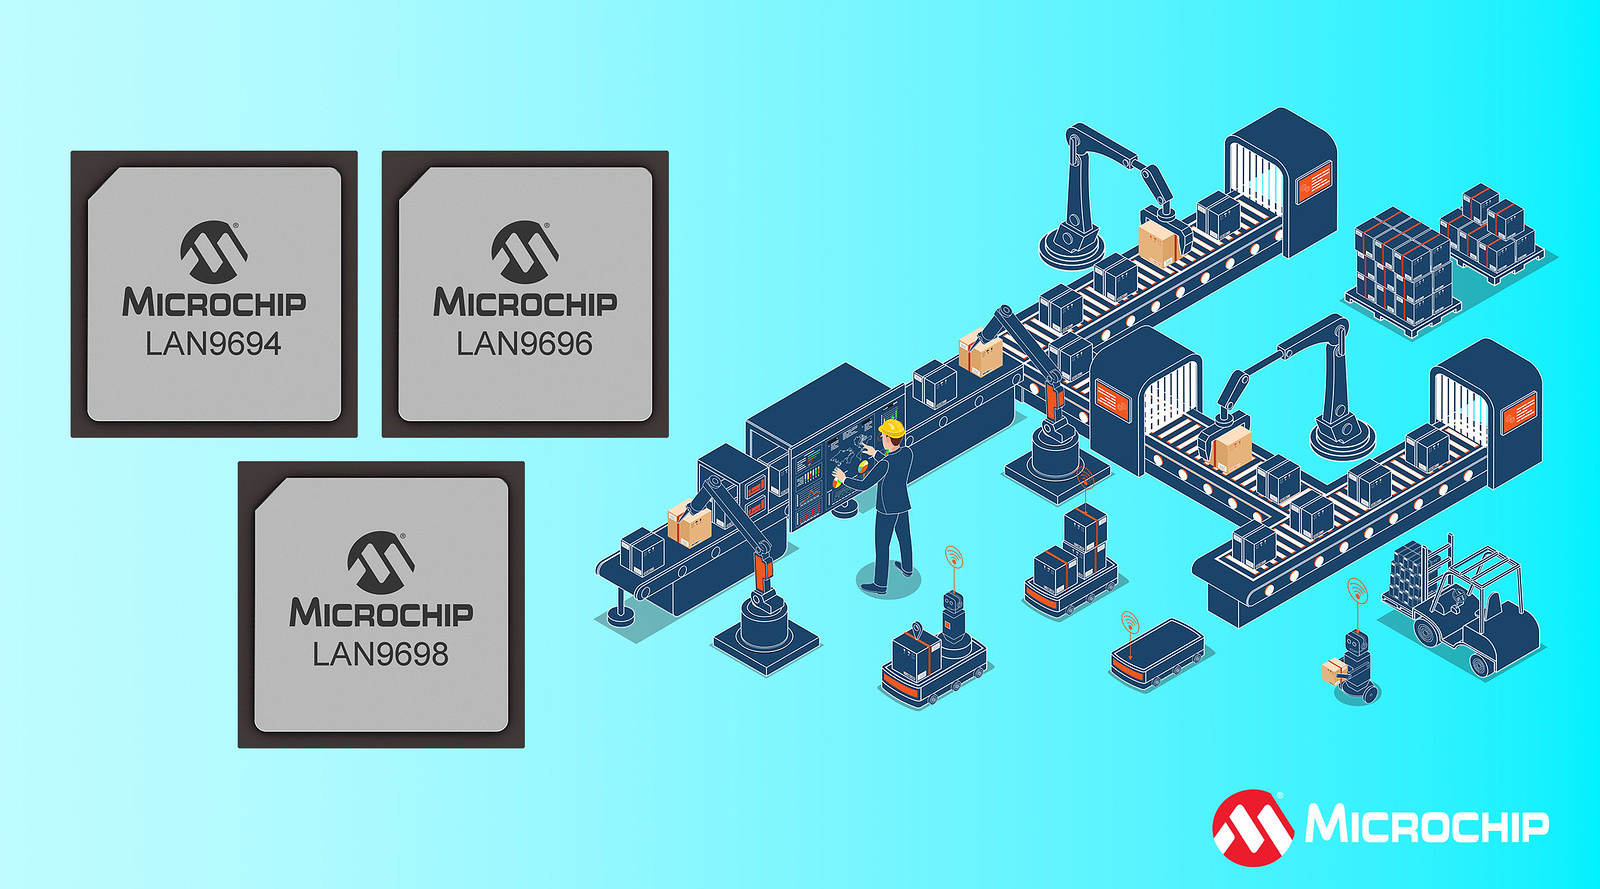 Nowa generacja przełączników Ethernet LAN969x firmy Microchip z funkcją Time Sensitive Networking (TSN) oraz skalowalną przepustowością